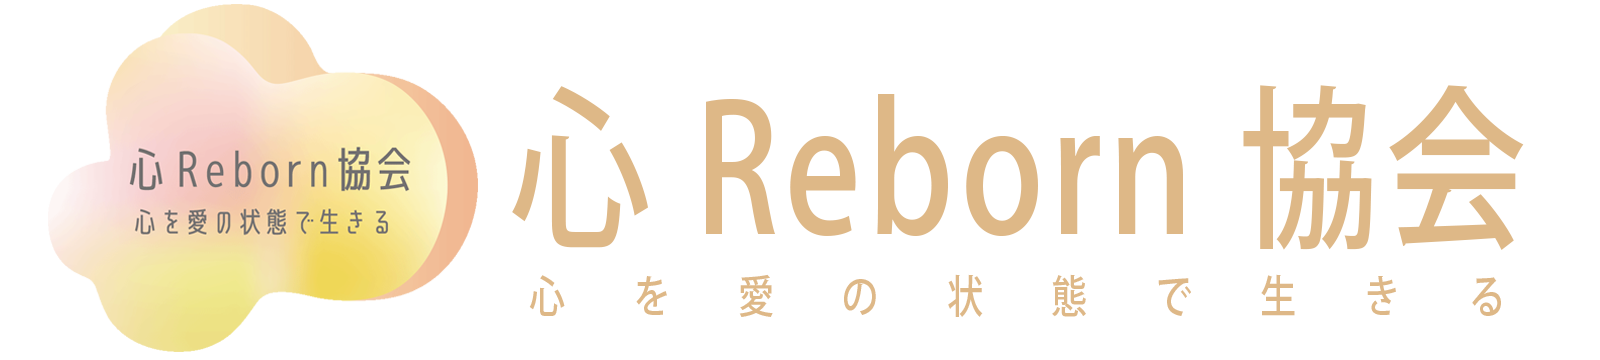 心Reborn協会【公式】